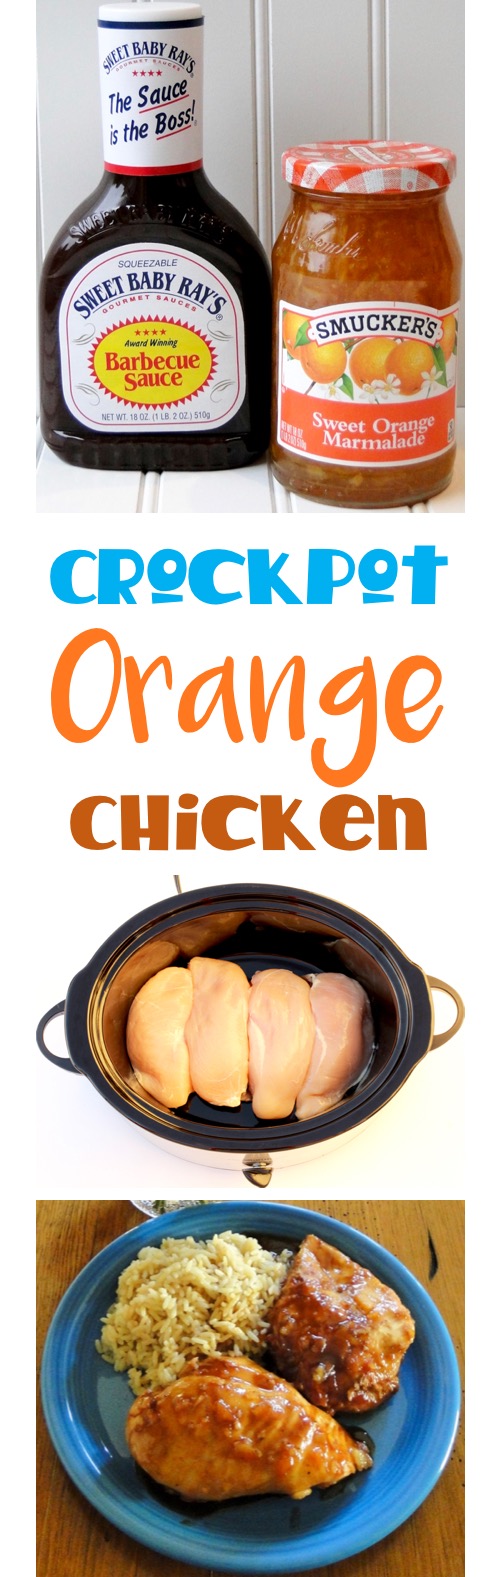 Crockpot Orange Chicken Recipe Easy 4 Ingredients from TheFrugalGirls.com